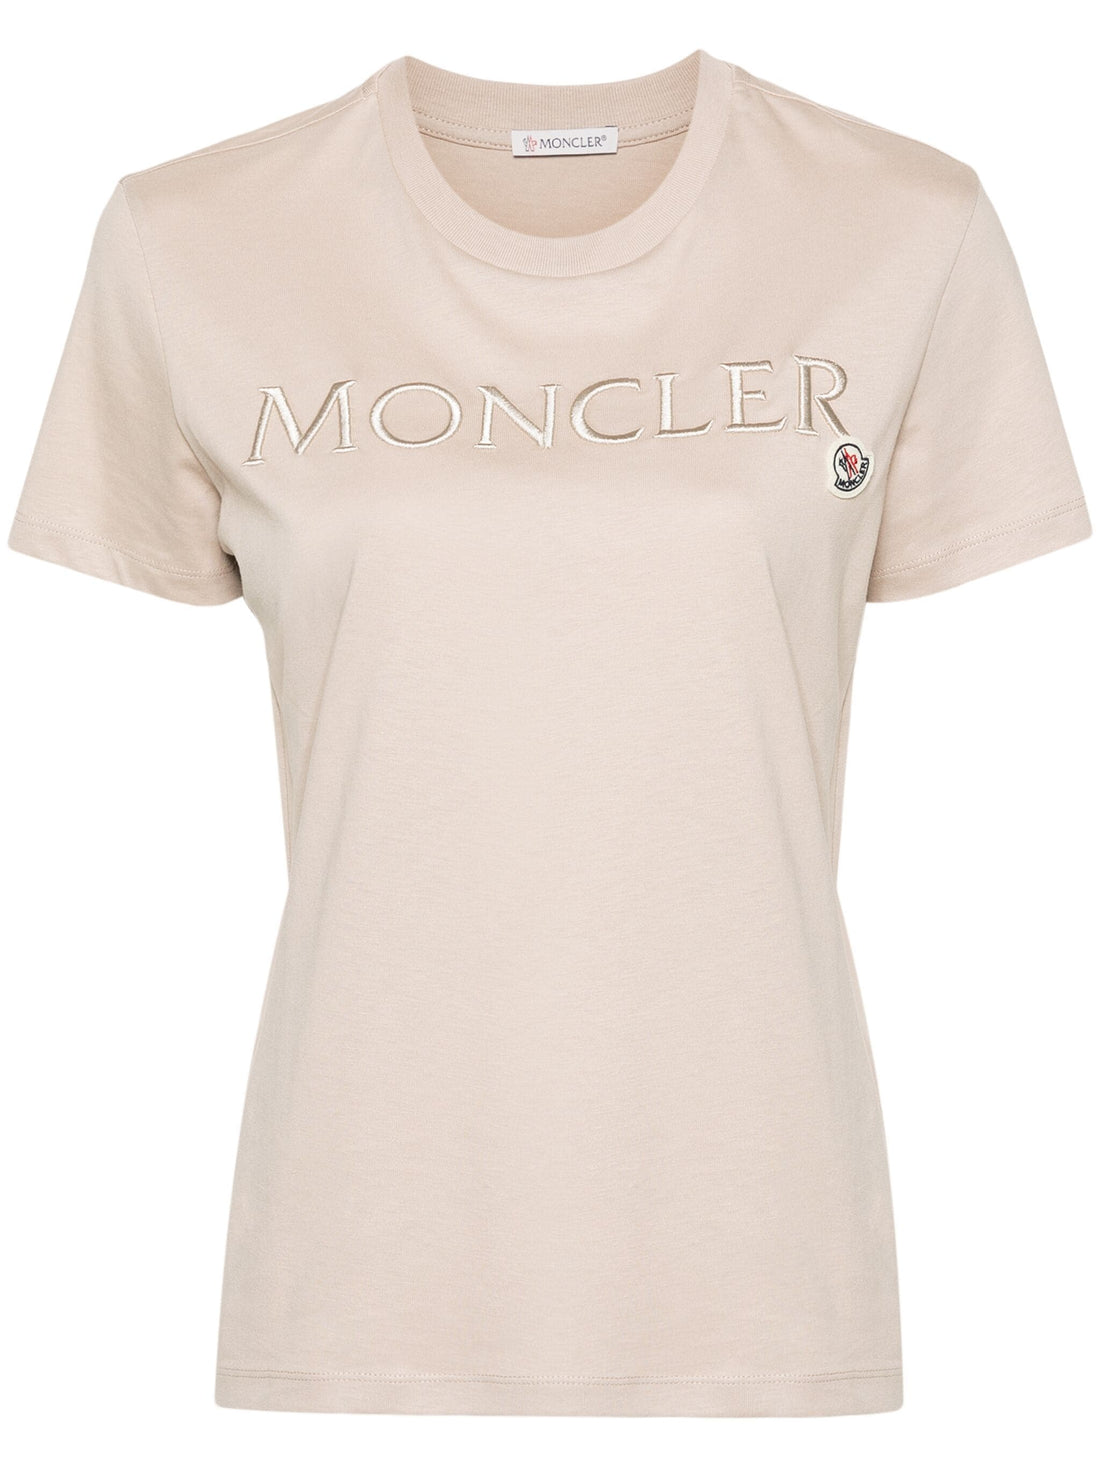 MONCLER WOMEN Double Logo Cotton T-Shirt Beige